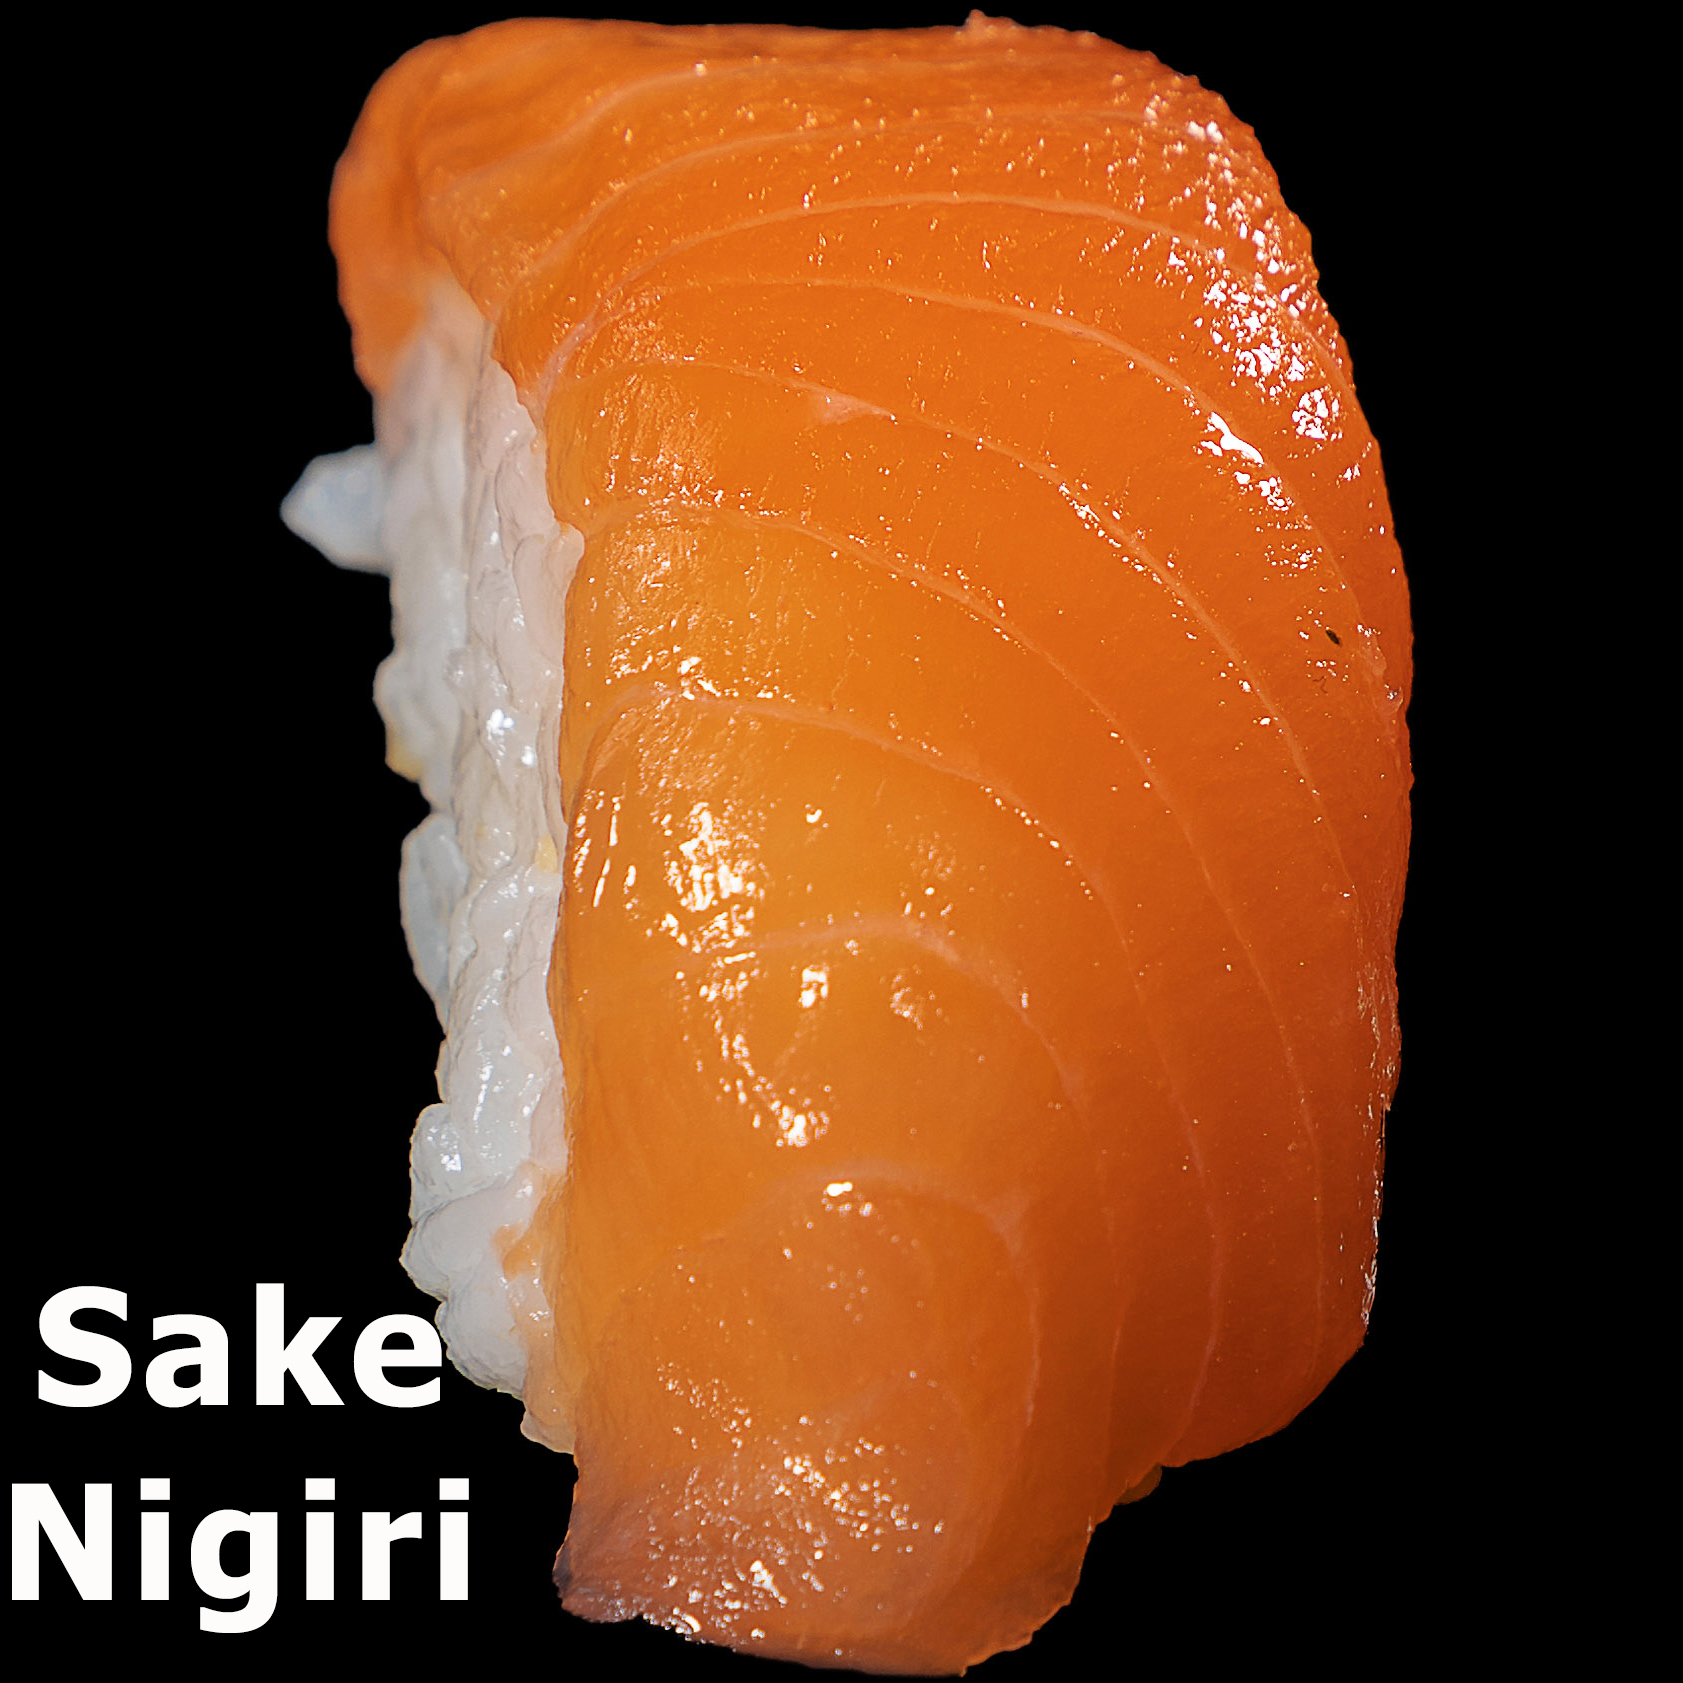 50. Sake Nigiri